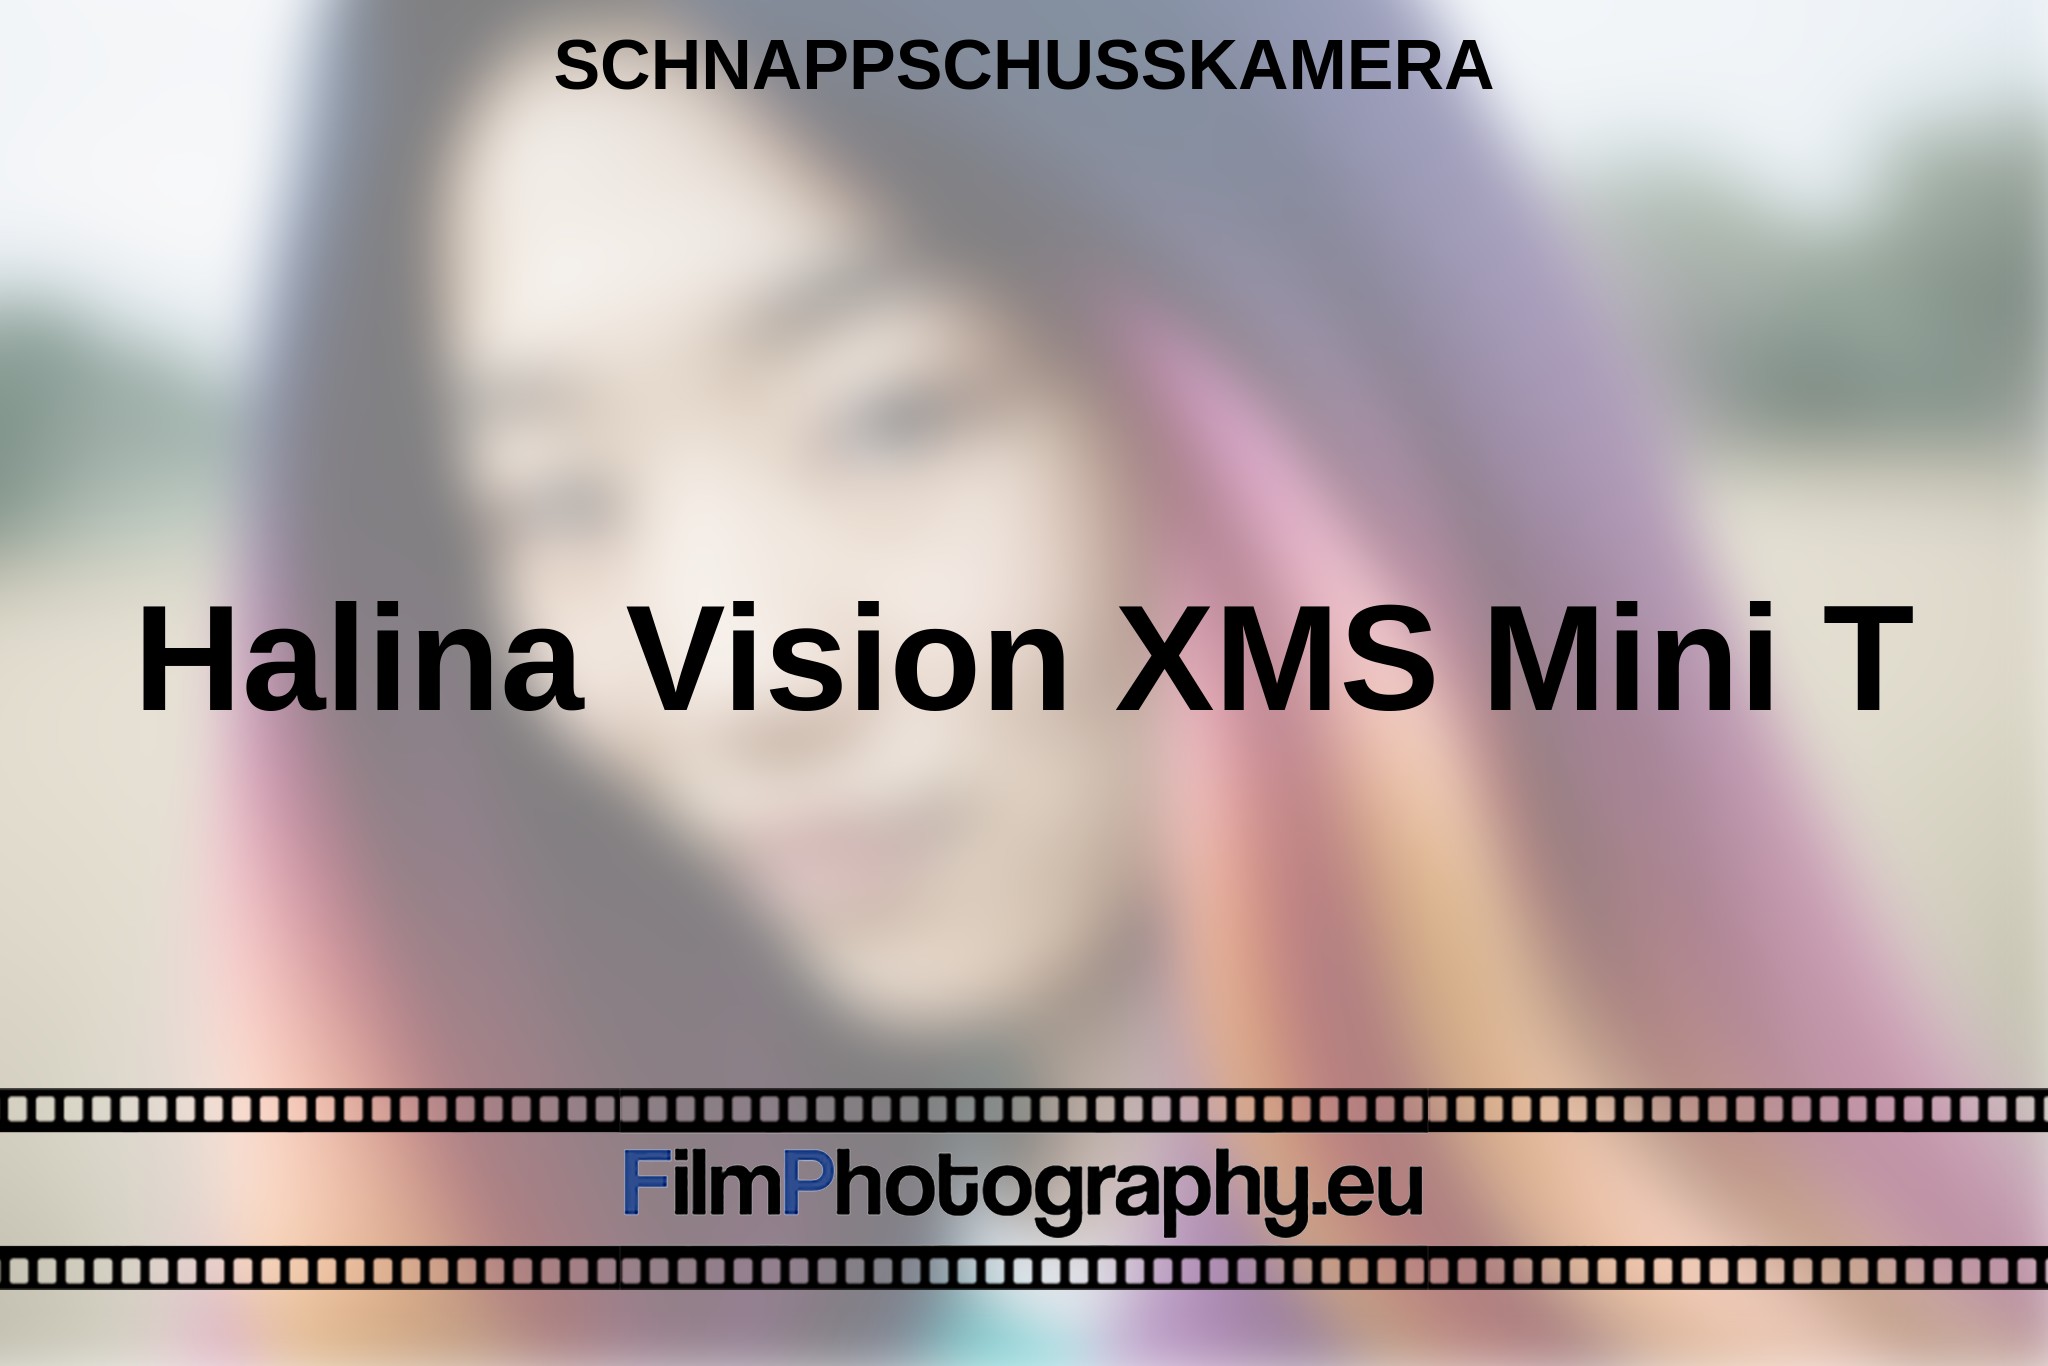 halina-vision-xms-mini-t-schnappschusskamera-bnv.jpg